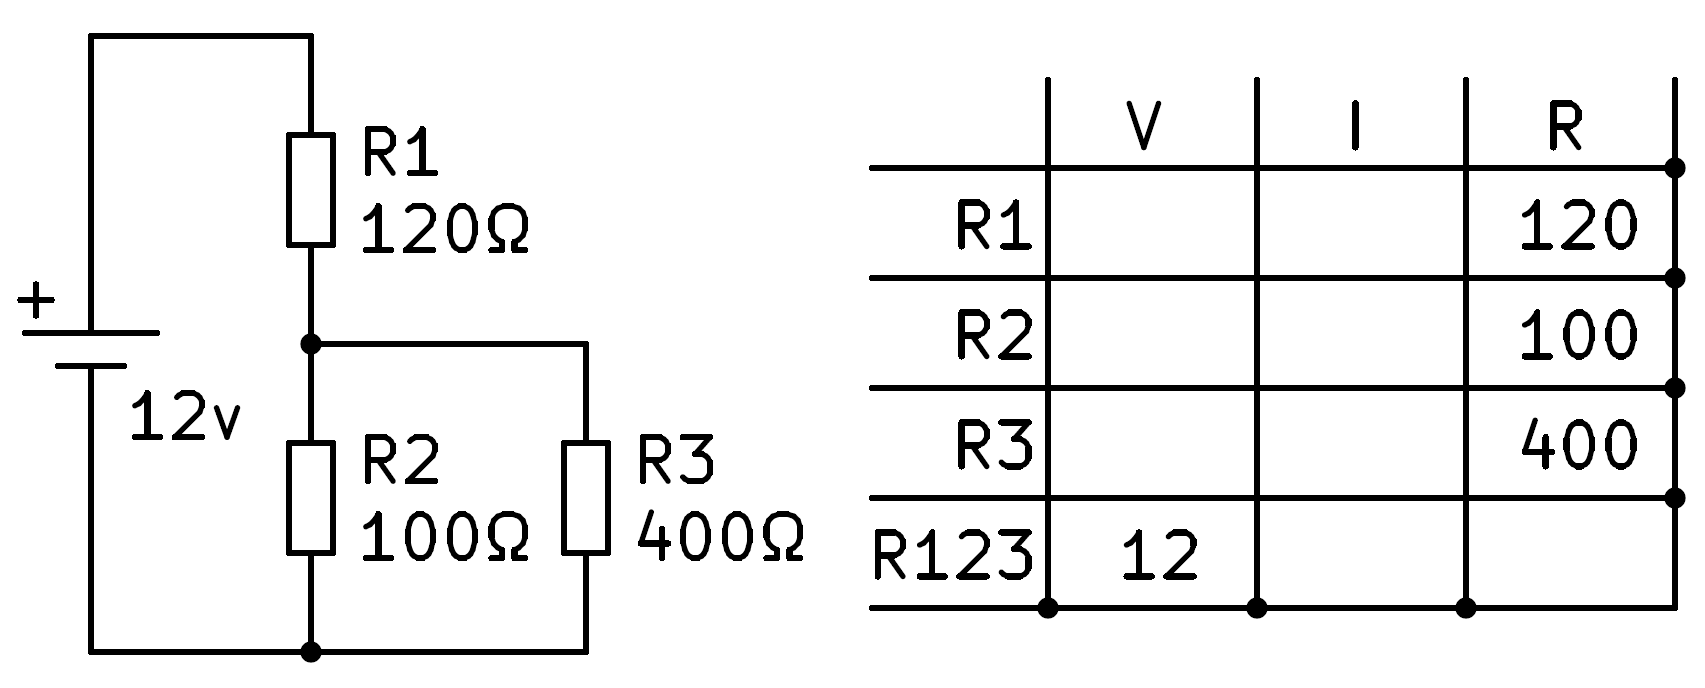 Cálculos de un circuito mixto serie-paralelo.